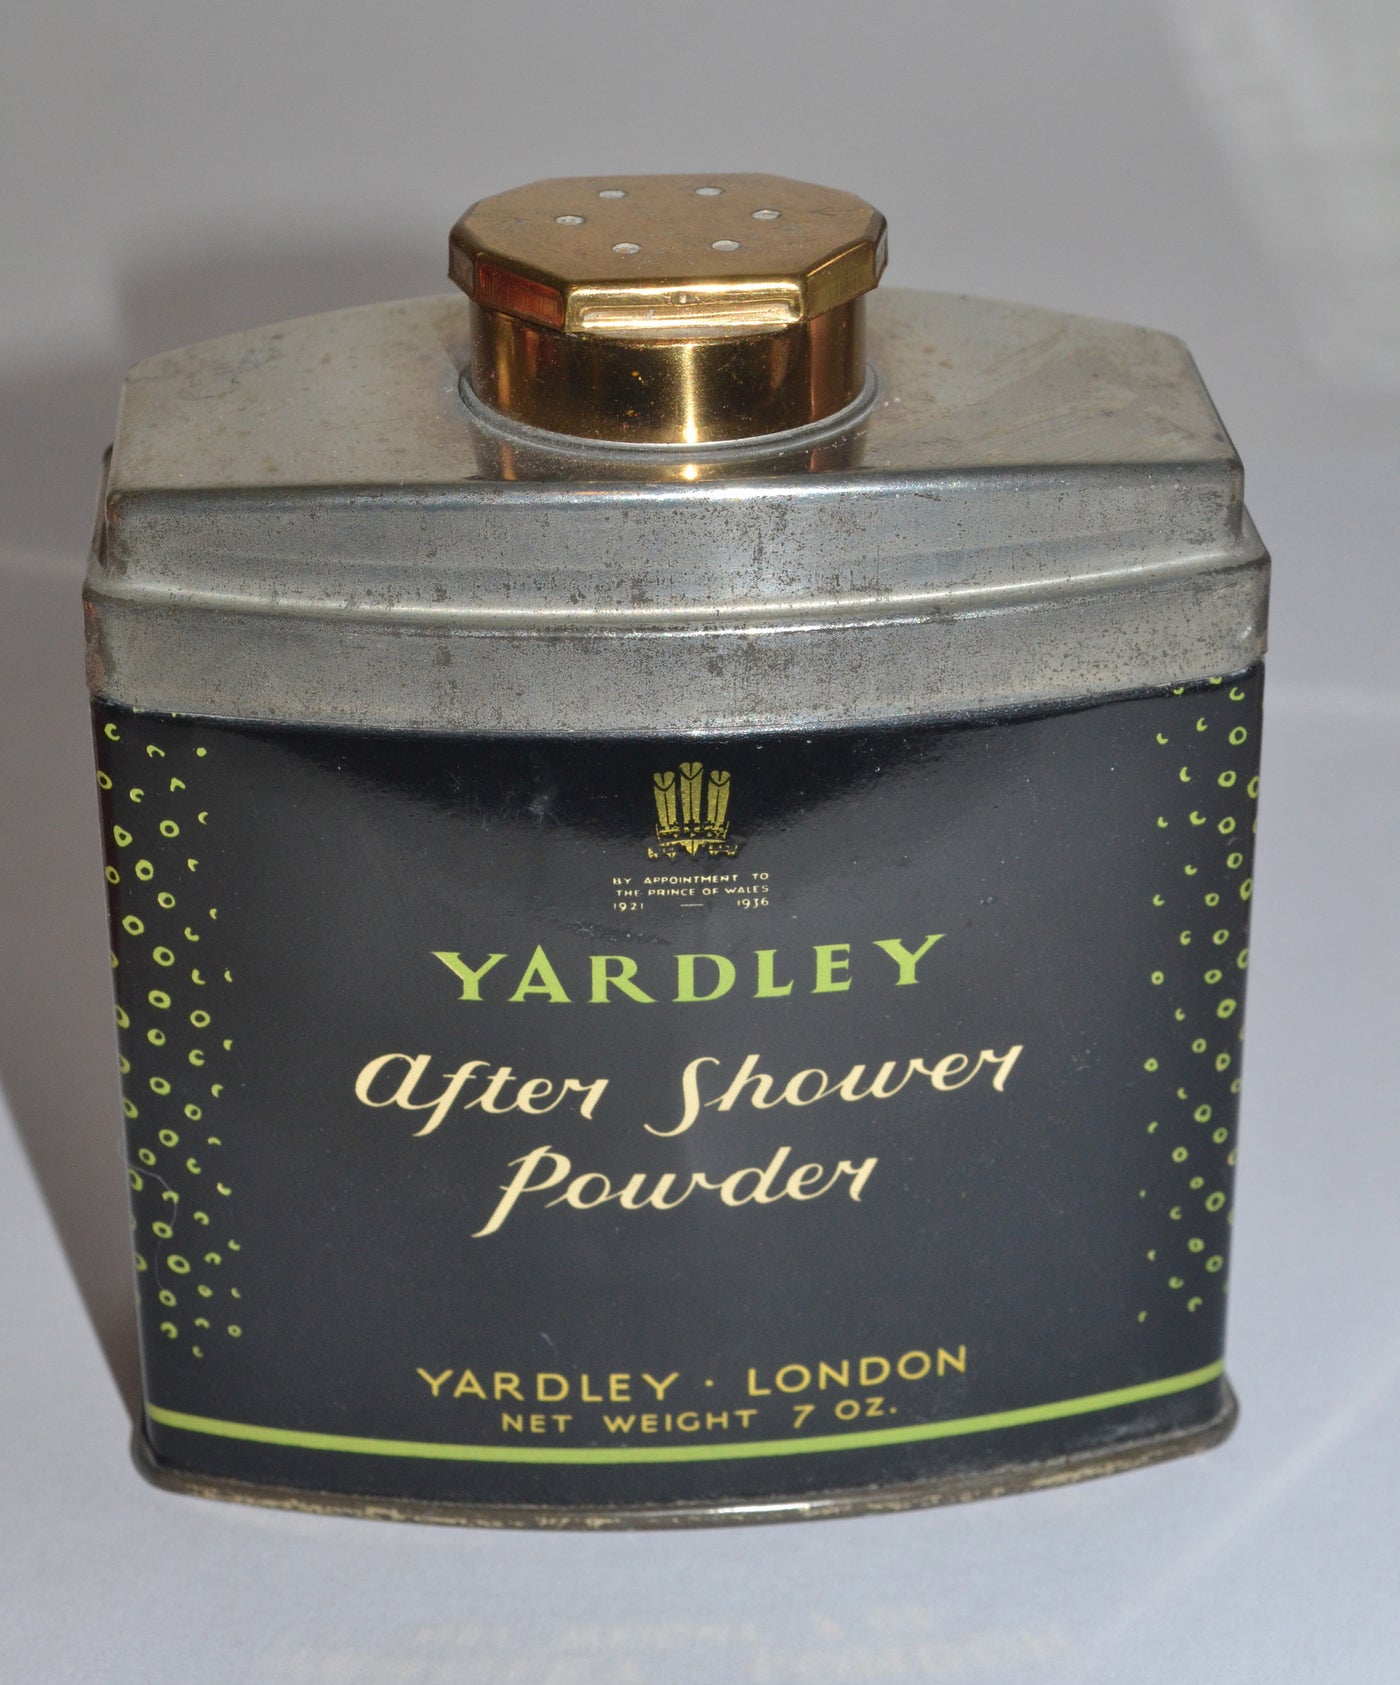 Yardley After Shower Powder